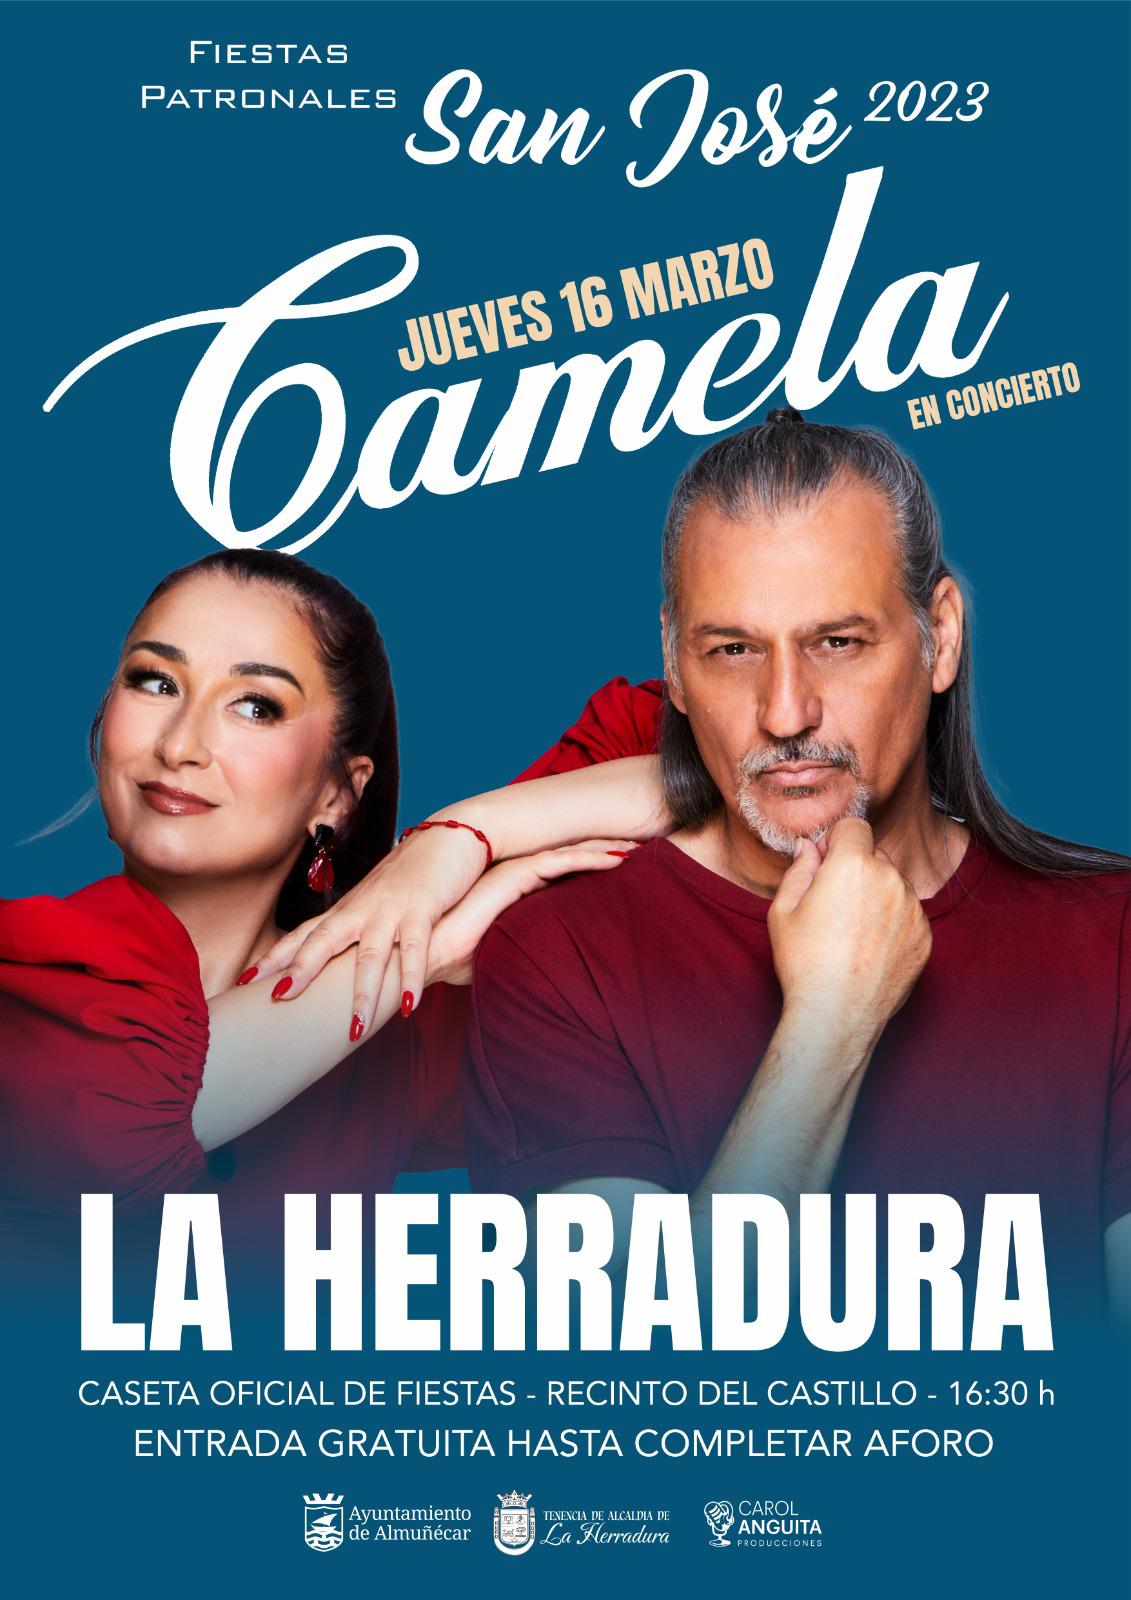 El concierto de Camela abre este jueves las fiestas patronales de La Herradura en honor a San José.